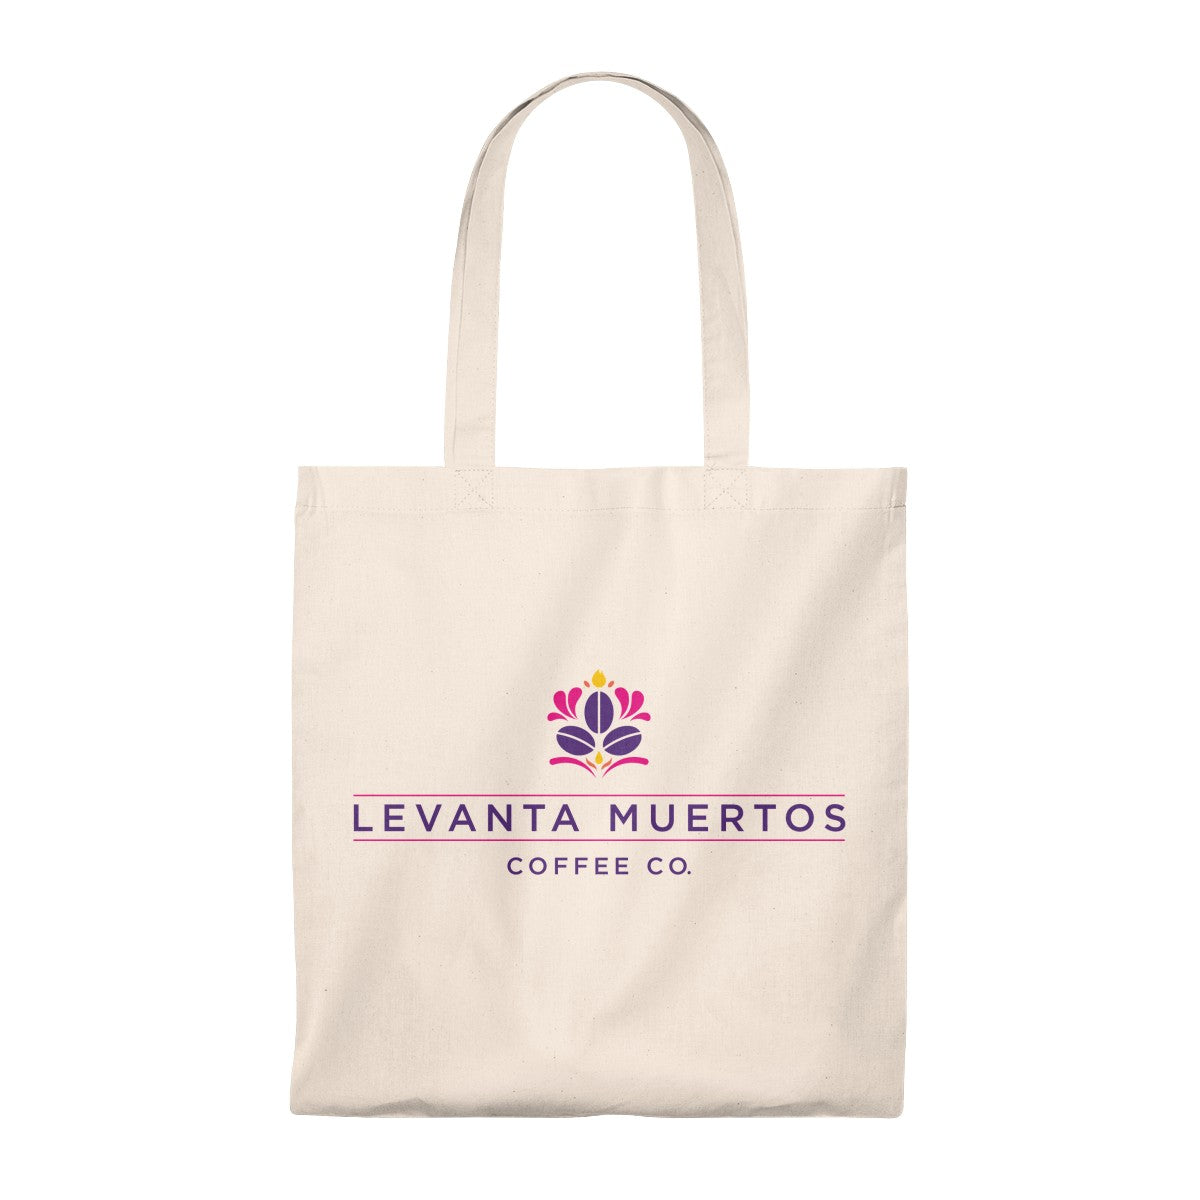 Levanta Muertos Coffee Co. Tote Bag - Vintage